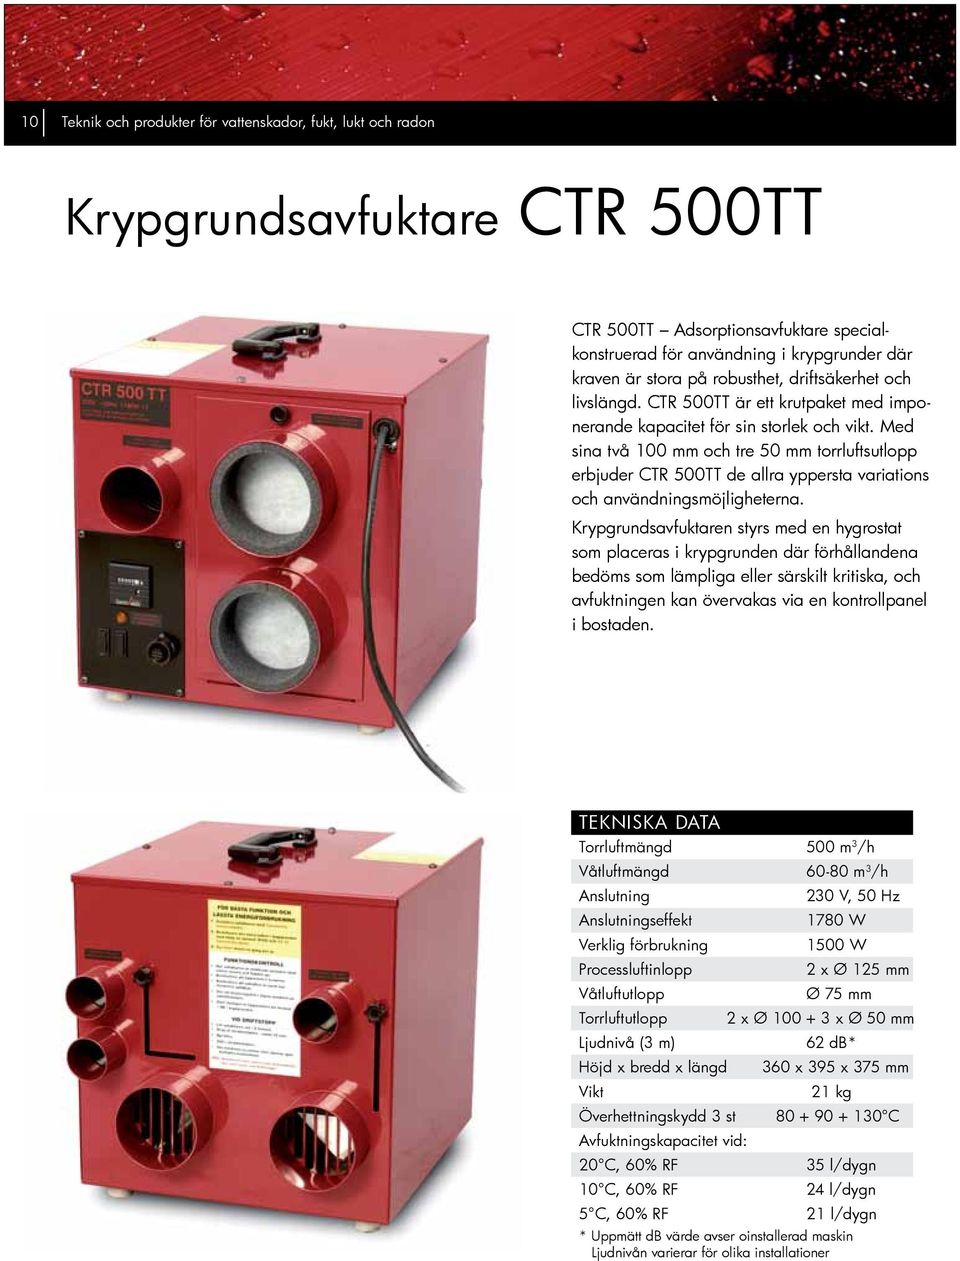 Med sina två 100 mm och tre 50 mm torrluftsutlopp erbjuder CTR 500TT de allra yppersta variations och användningsmöjligheterna.